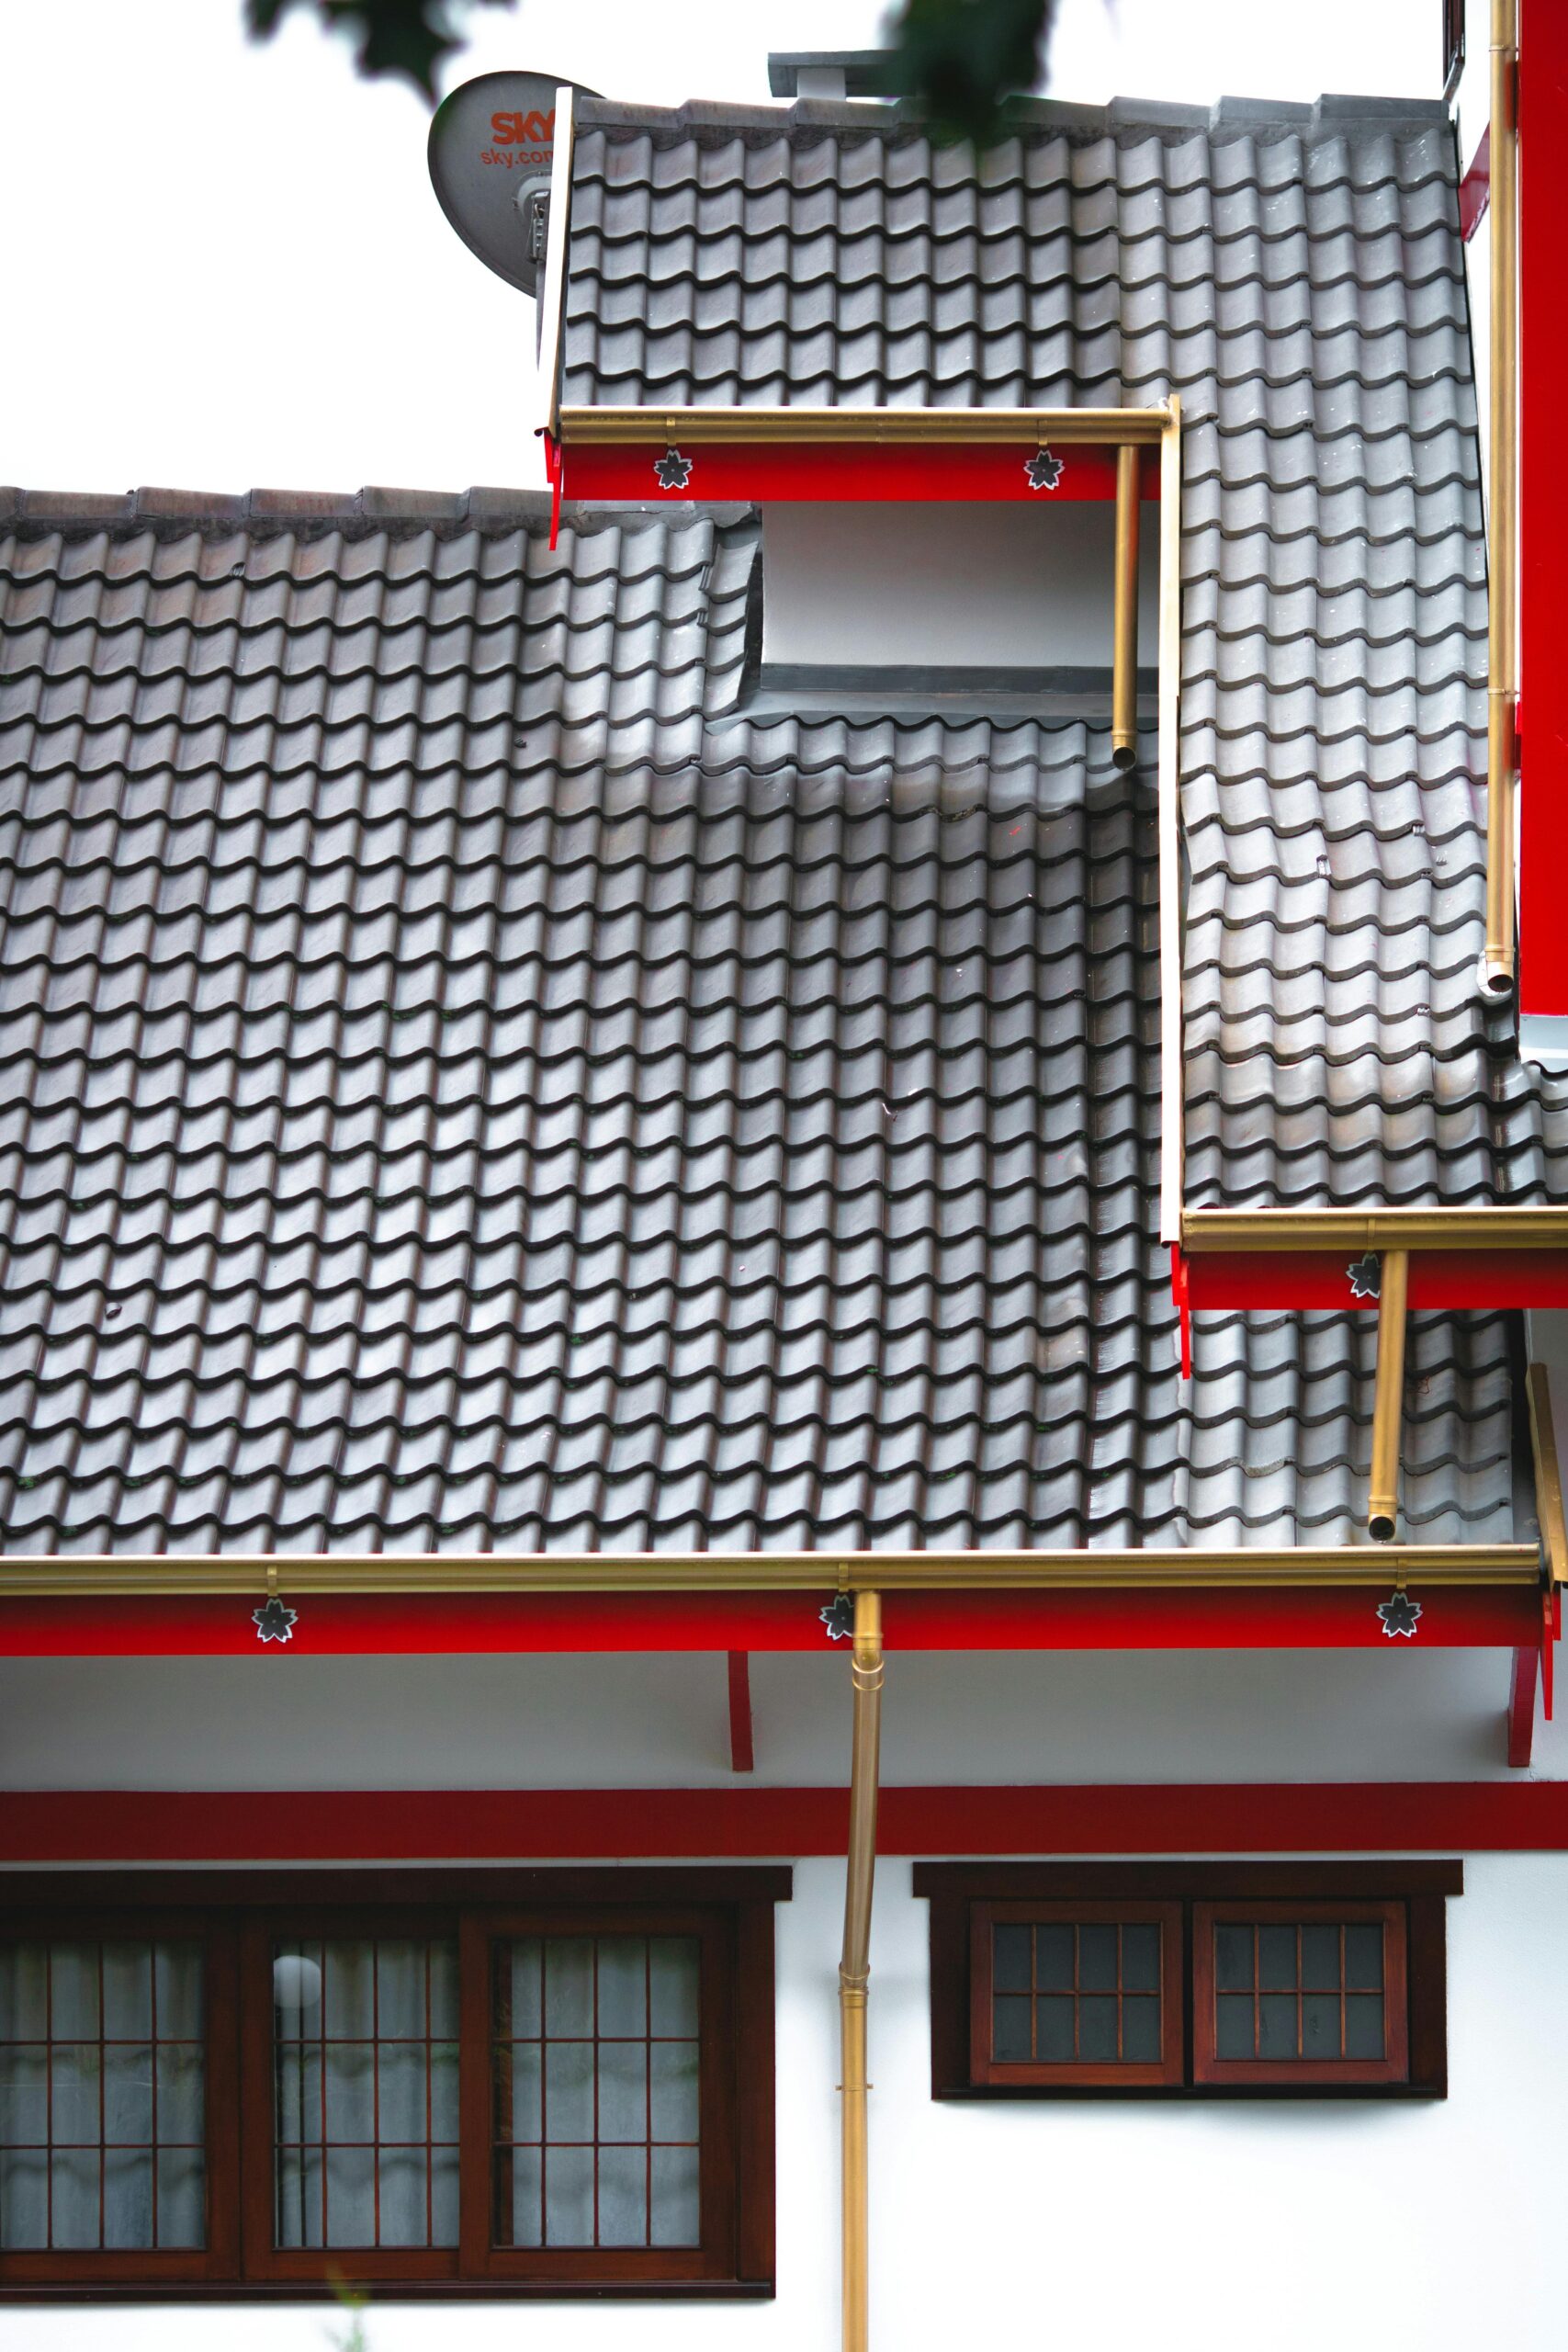 New Residential House Architectural Asphalt Shingle Roof Vinyl Siding Gables